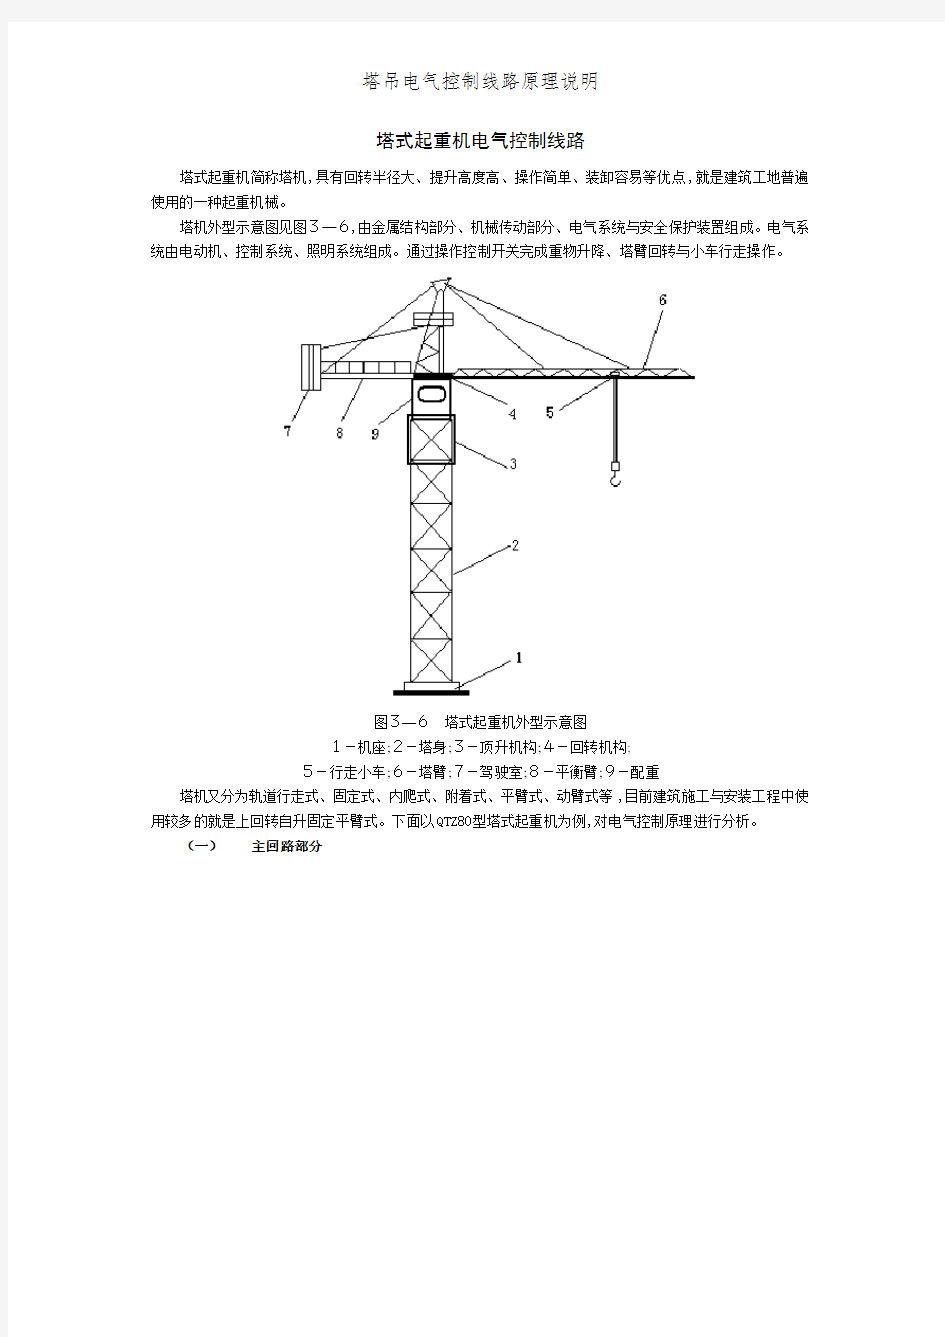 塔吊电气控制线路原理说明